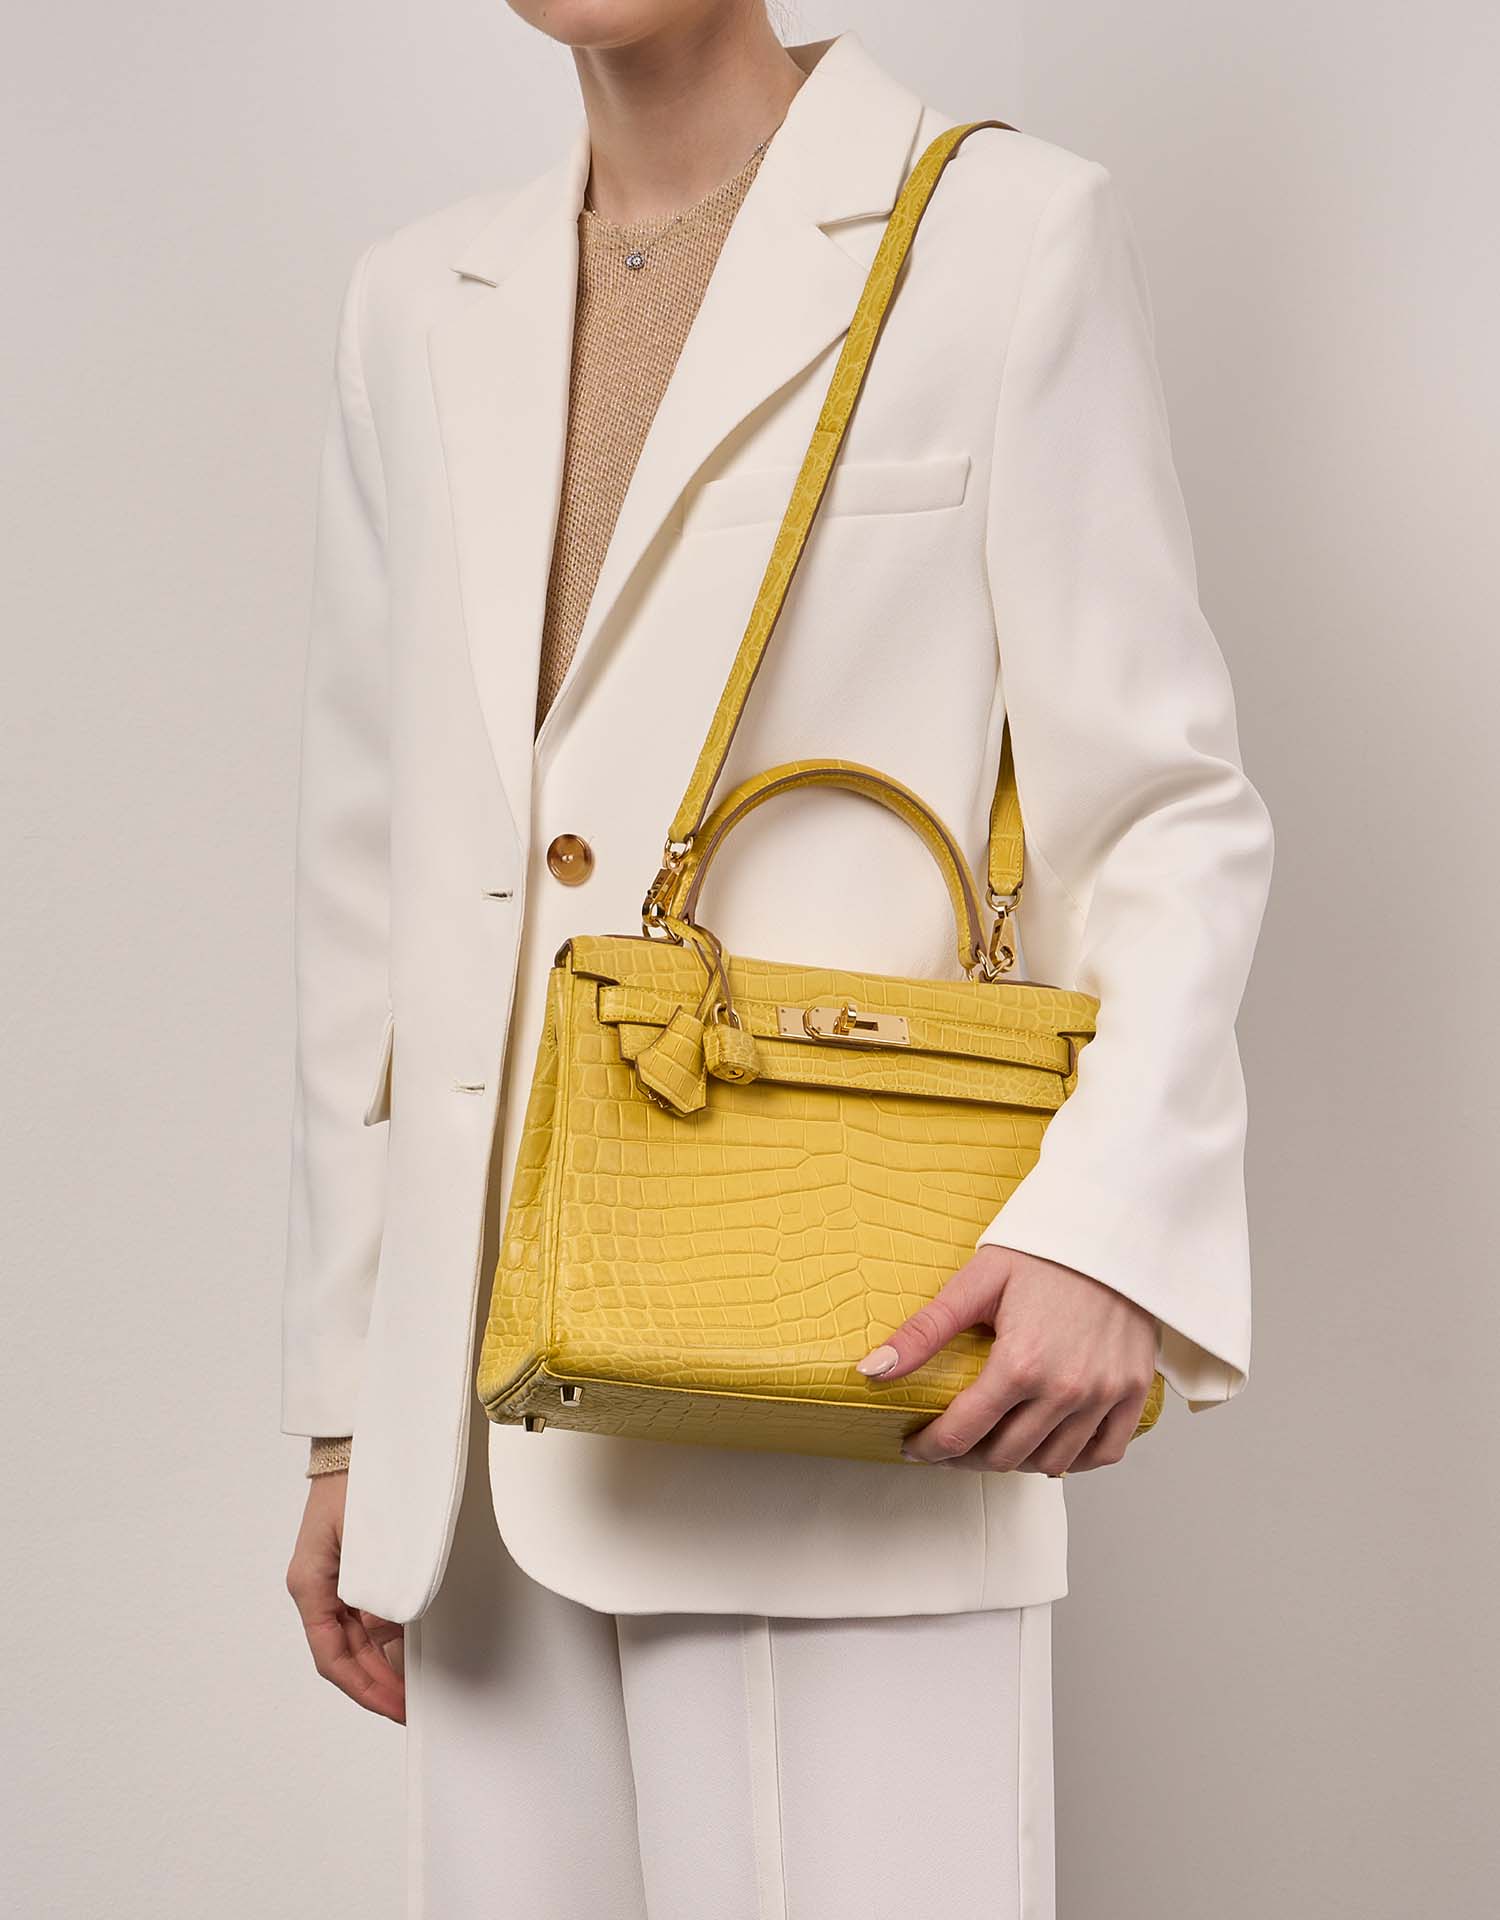 Hermès Kelly 28 JauneMimosa Größen Getragen | Verkaufen Sie Ihre Designer-Tasche auf Saclab.com